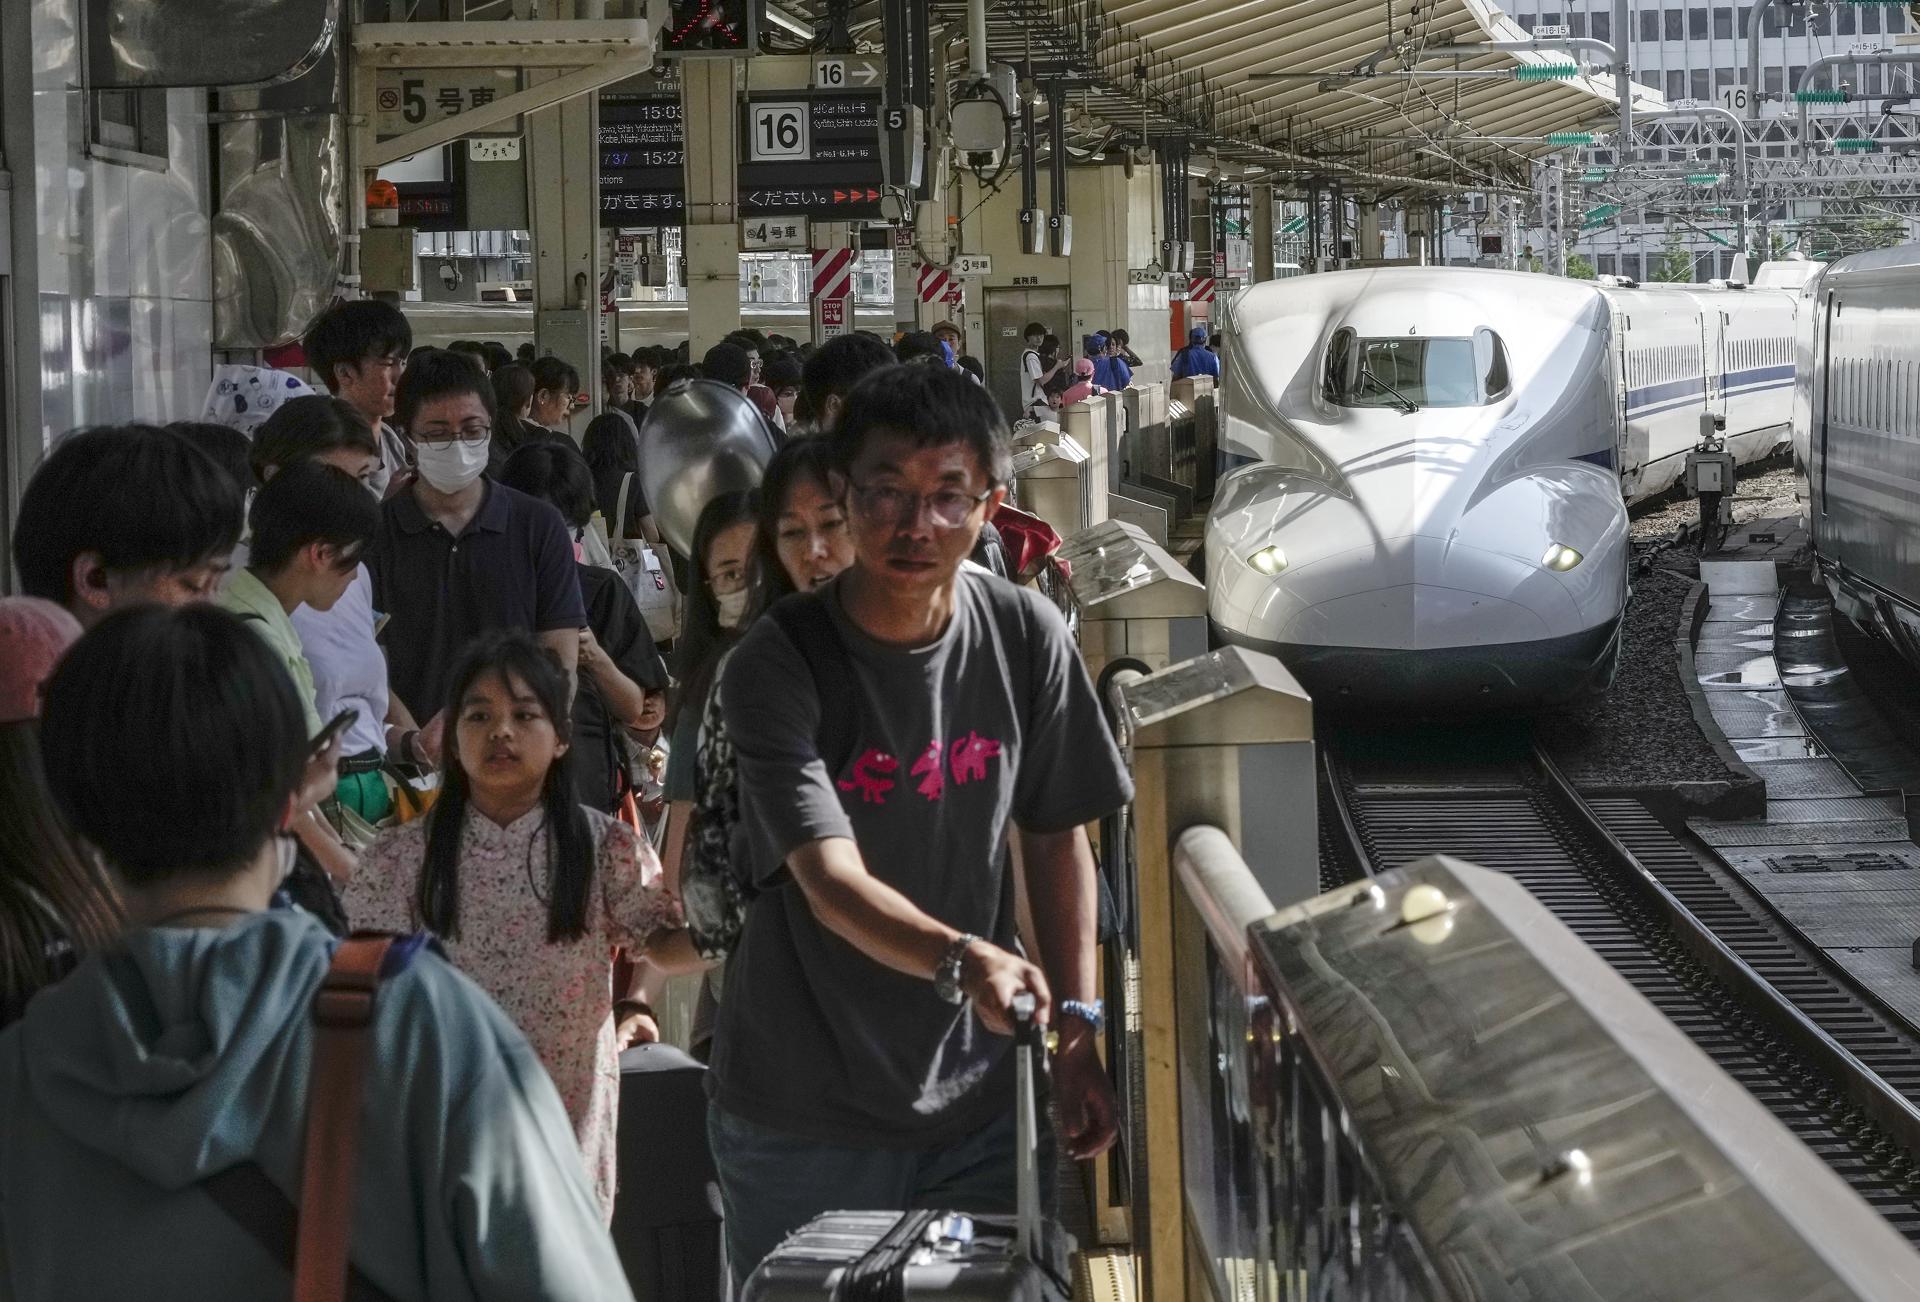 Un tren bala fue registrado este lunes, 14 de agosto, a su llegada a una estación, en Tokio (Japón). Varias líneas importantes del shinkansen -tren bala- quedaron suspendidas hacia y desde Tokio por las fuertes lluvias que provoca el pasó del ciclón tropical Lan por Japón. EFE/Kimimasa Mayama